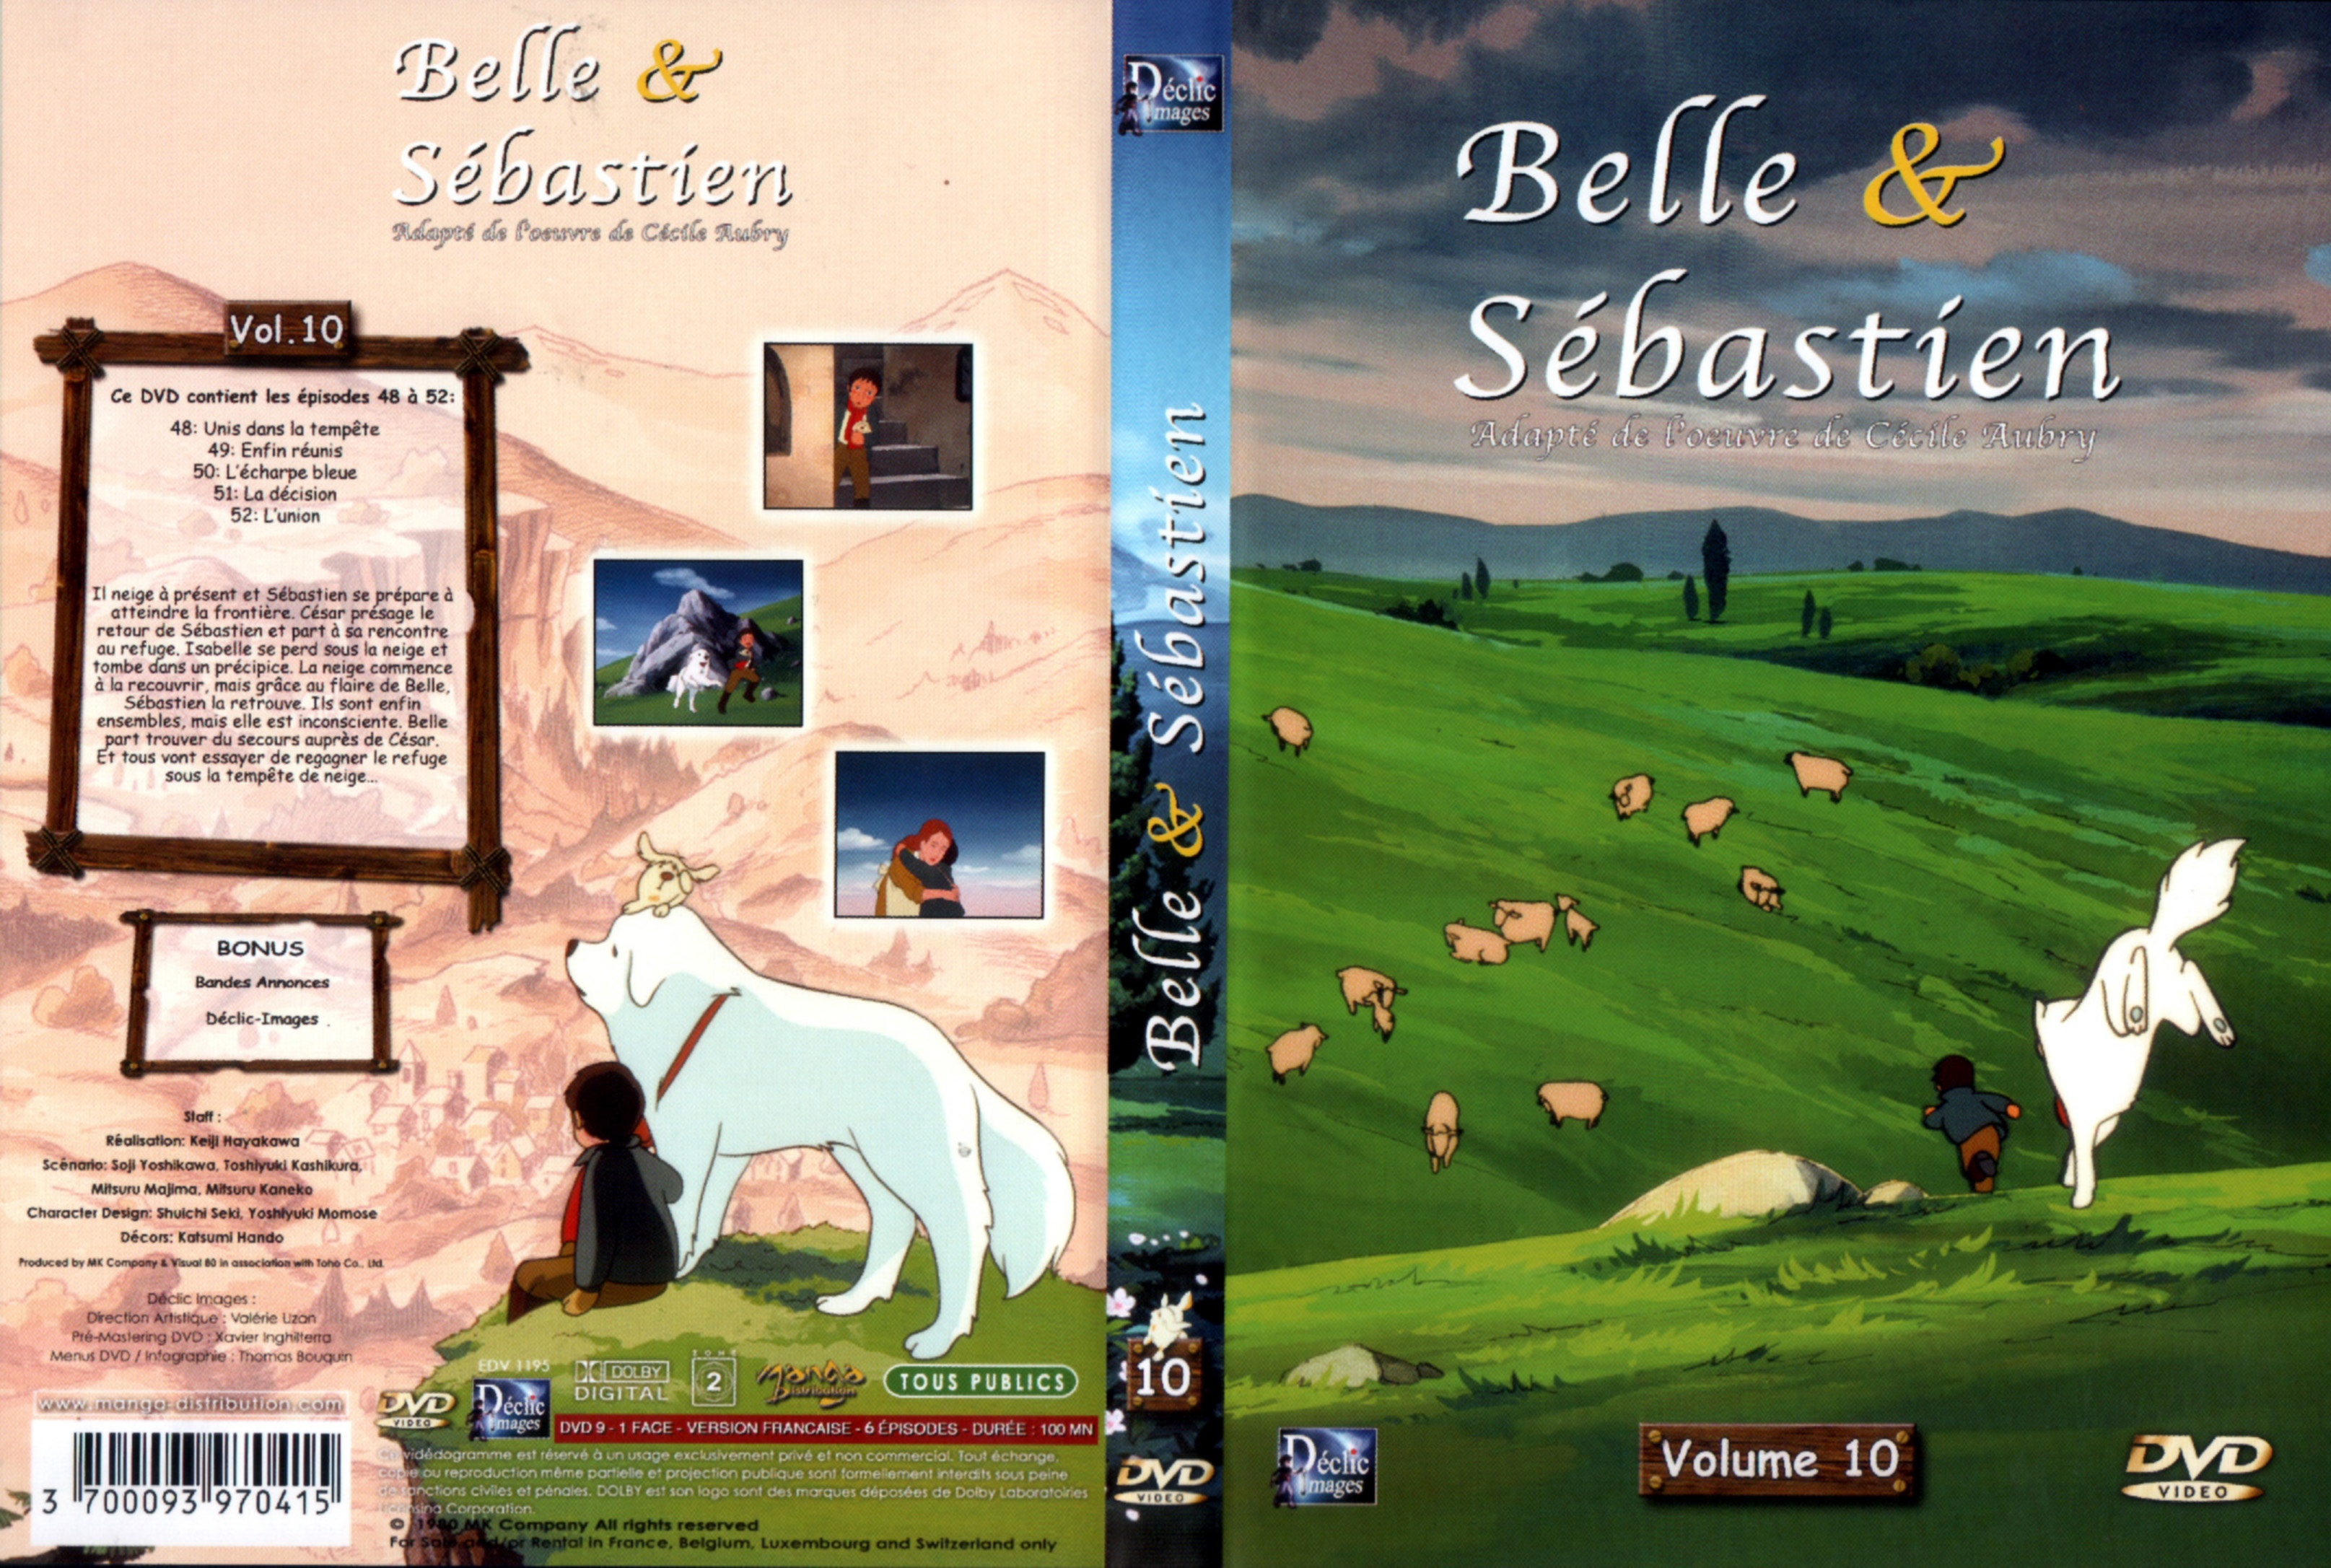 Jaquette DVD Belle et Sebastien DVD 10